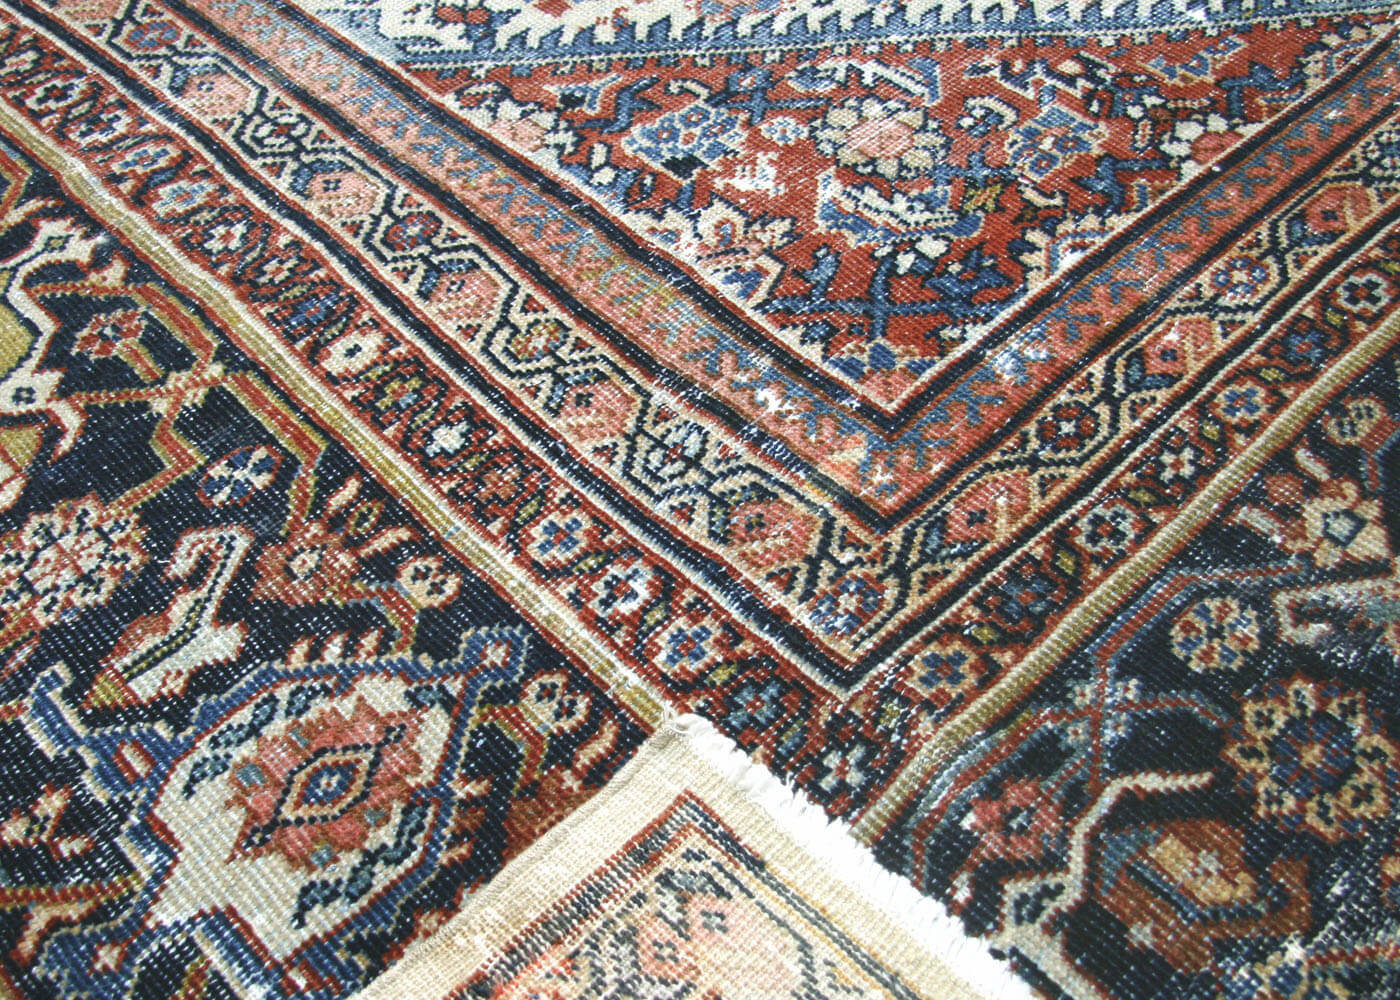 Antique Persian Mahal Rug - 9'8" x 13'3"